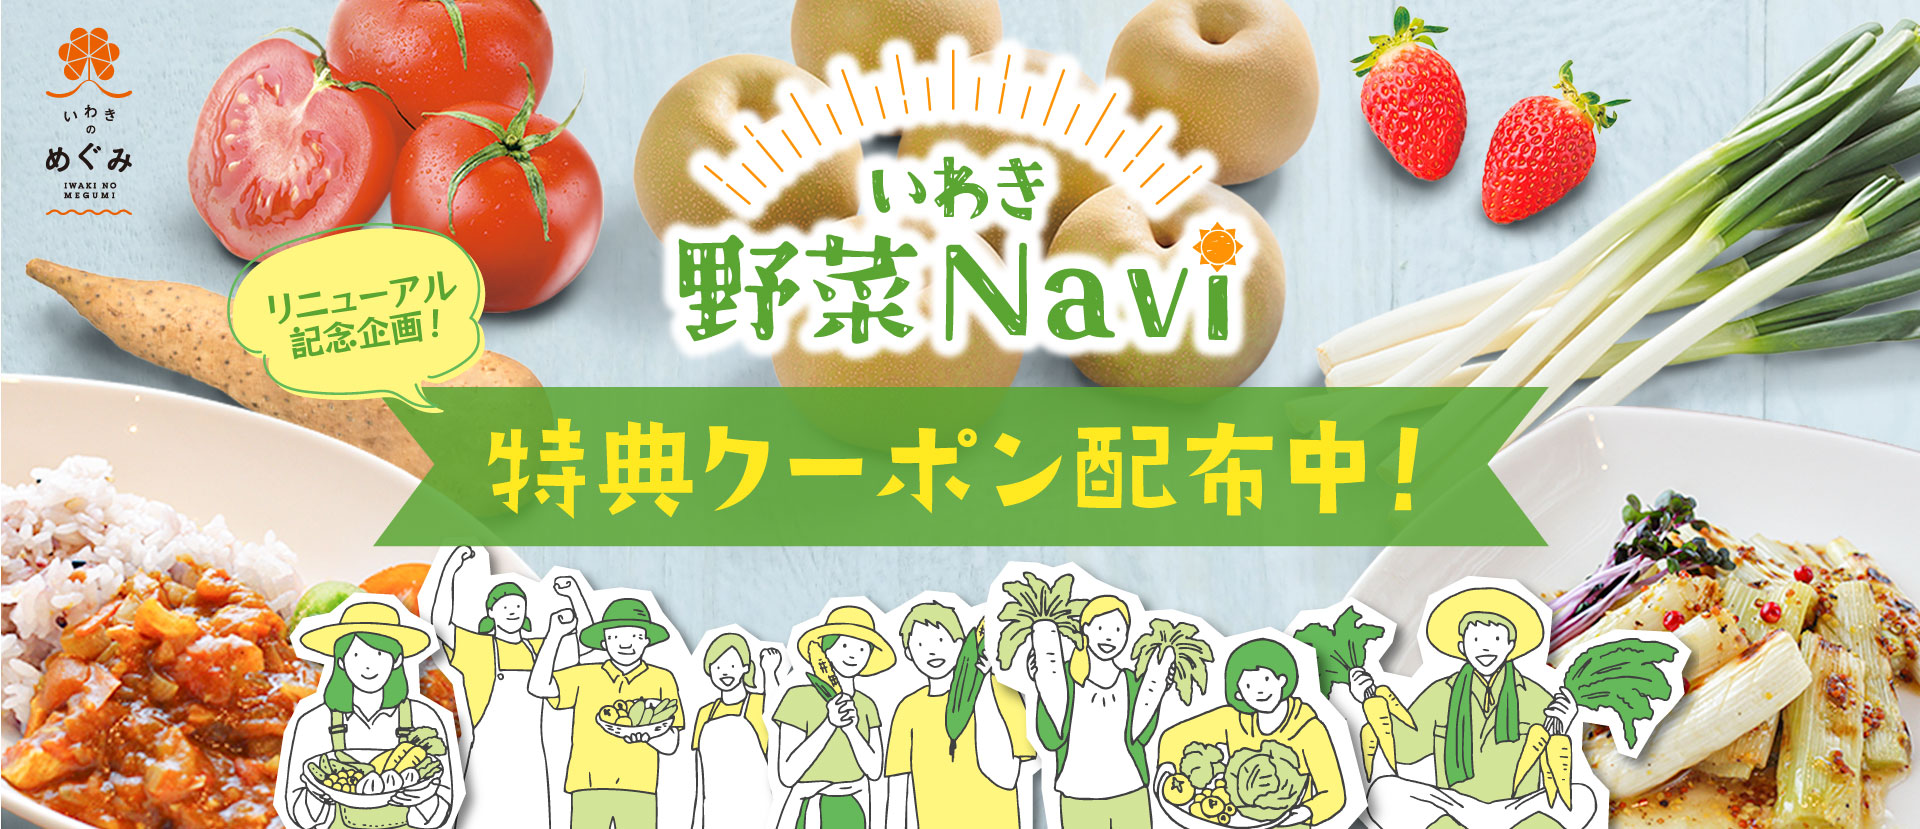 いわき野菜Naviリニューアル記念!